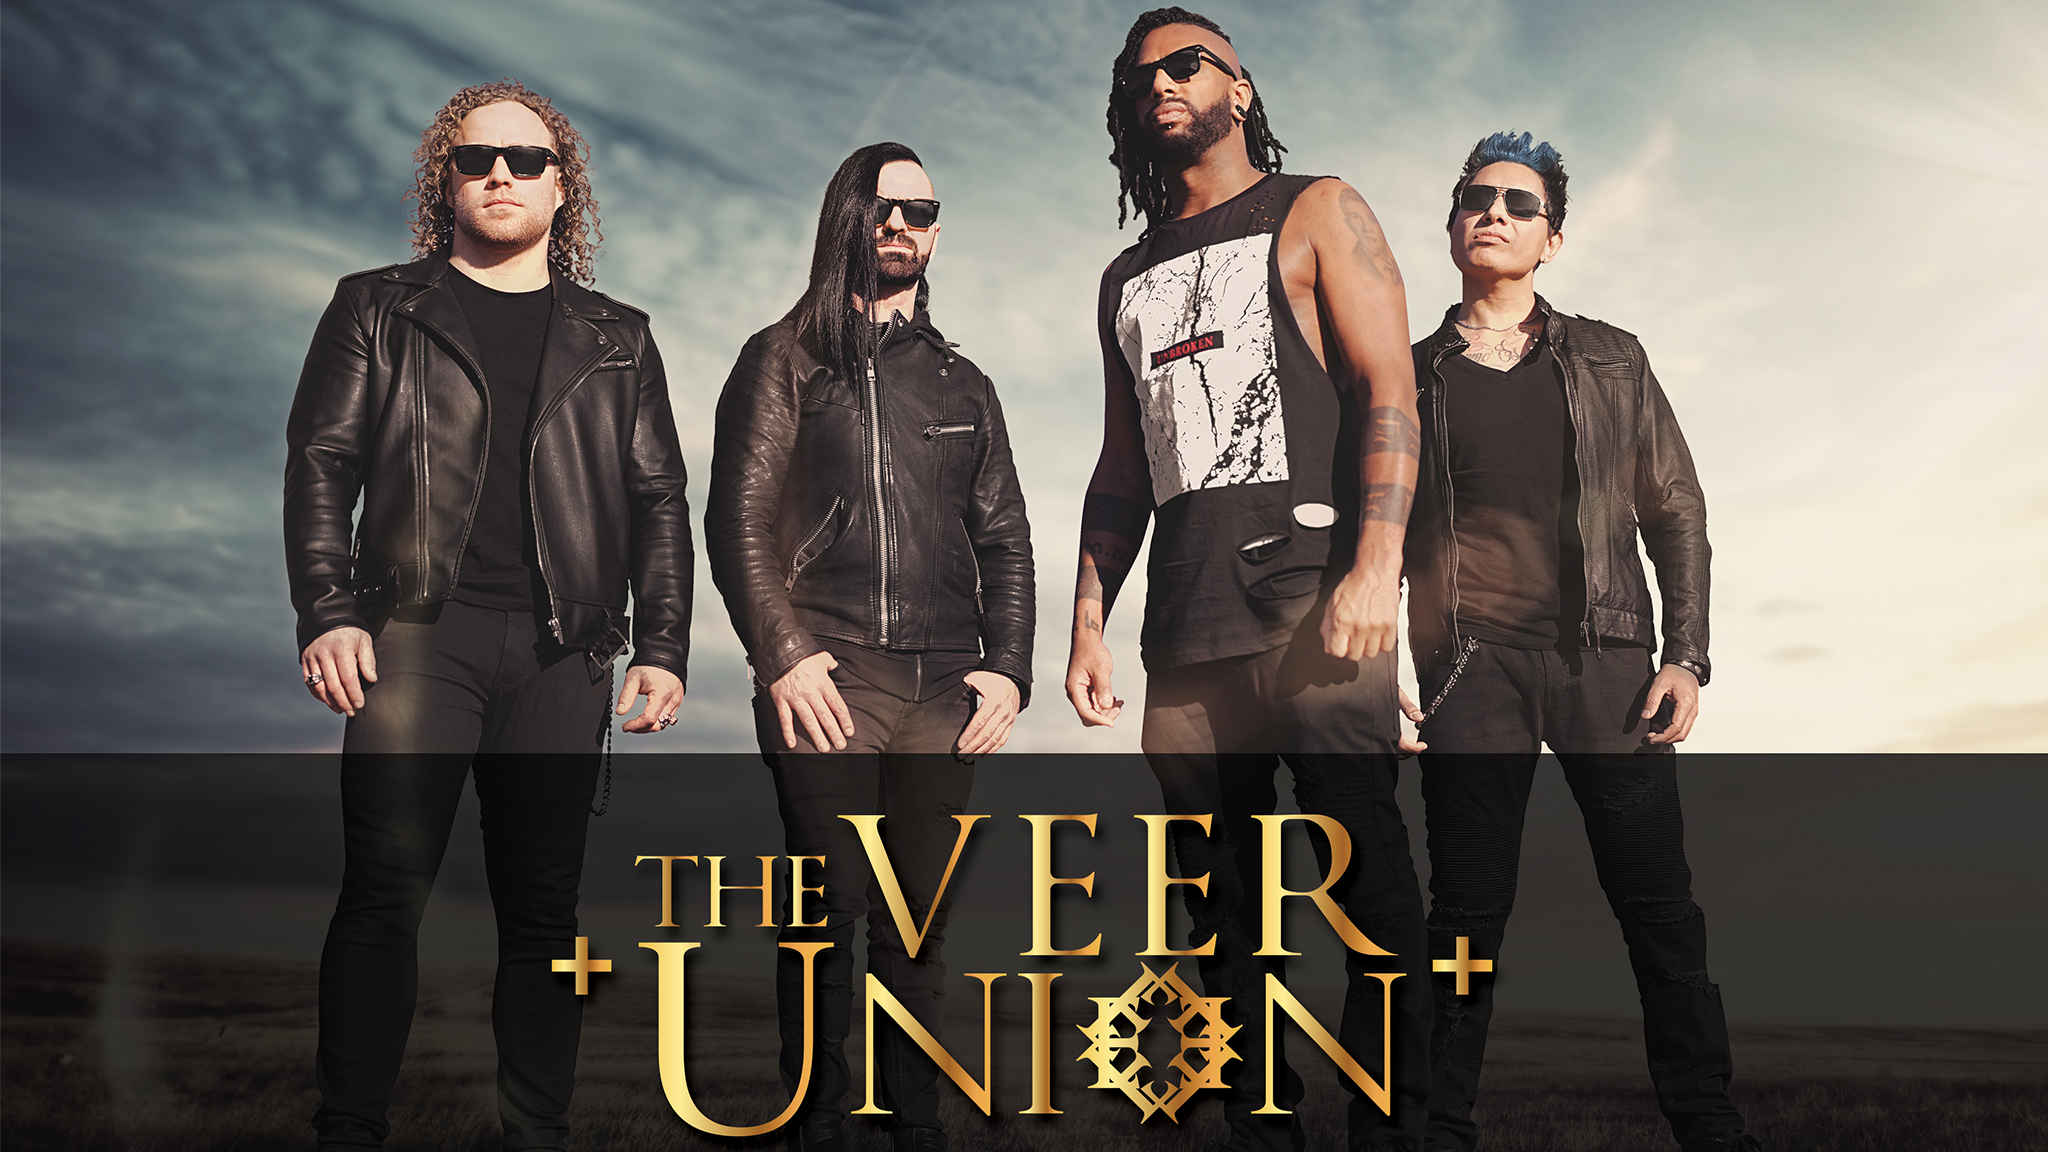 The veer union. The Veer Union группа. The Veer Union фото. The Veer Union logo. The Veer Union Bitter end.